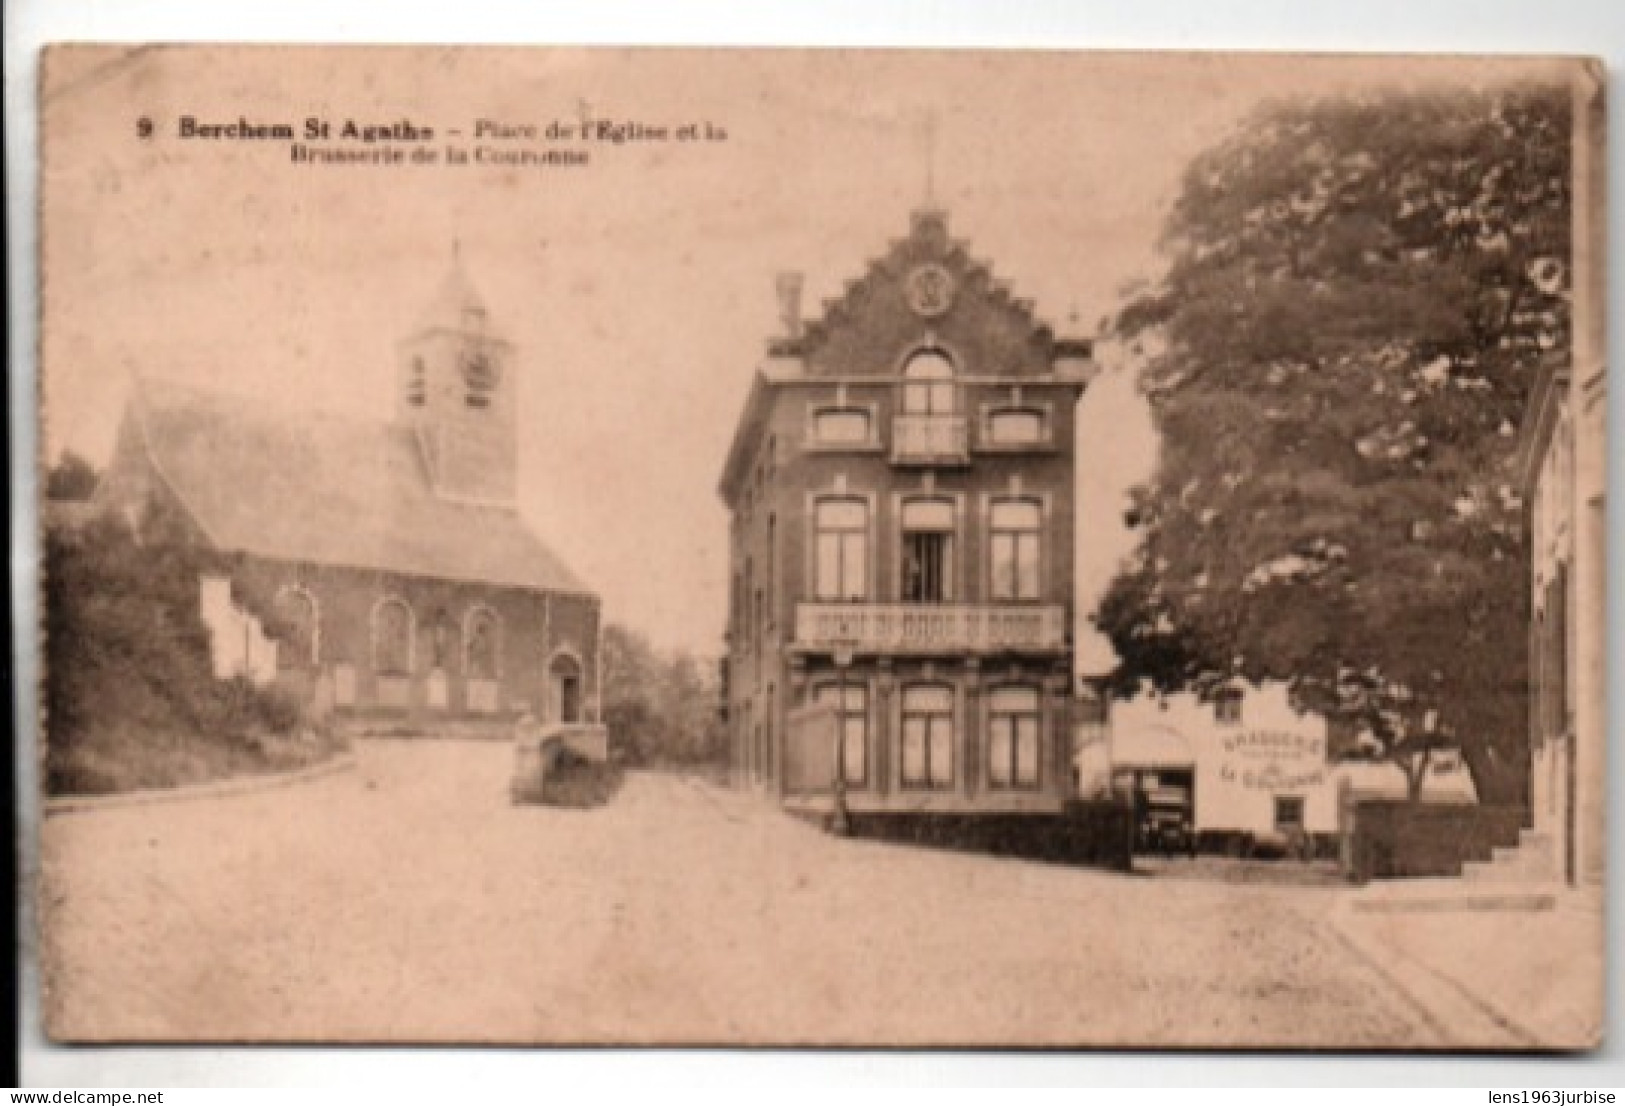 Berchem St Agathe - Place De L' Eglise Et La Brasserie De La Couronne - Pubs, Hotels, Restaurants